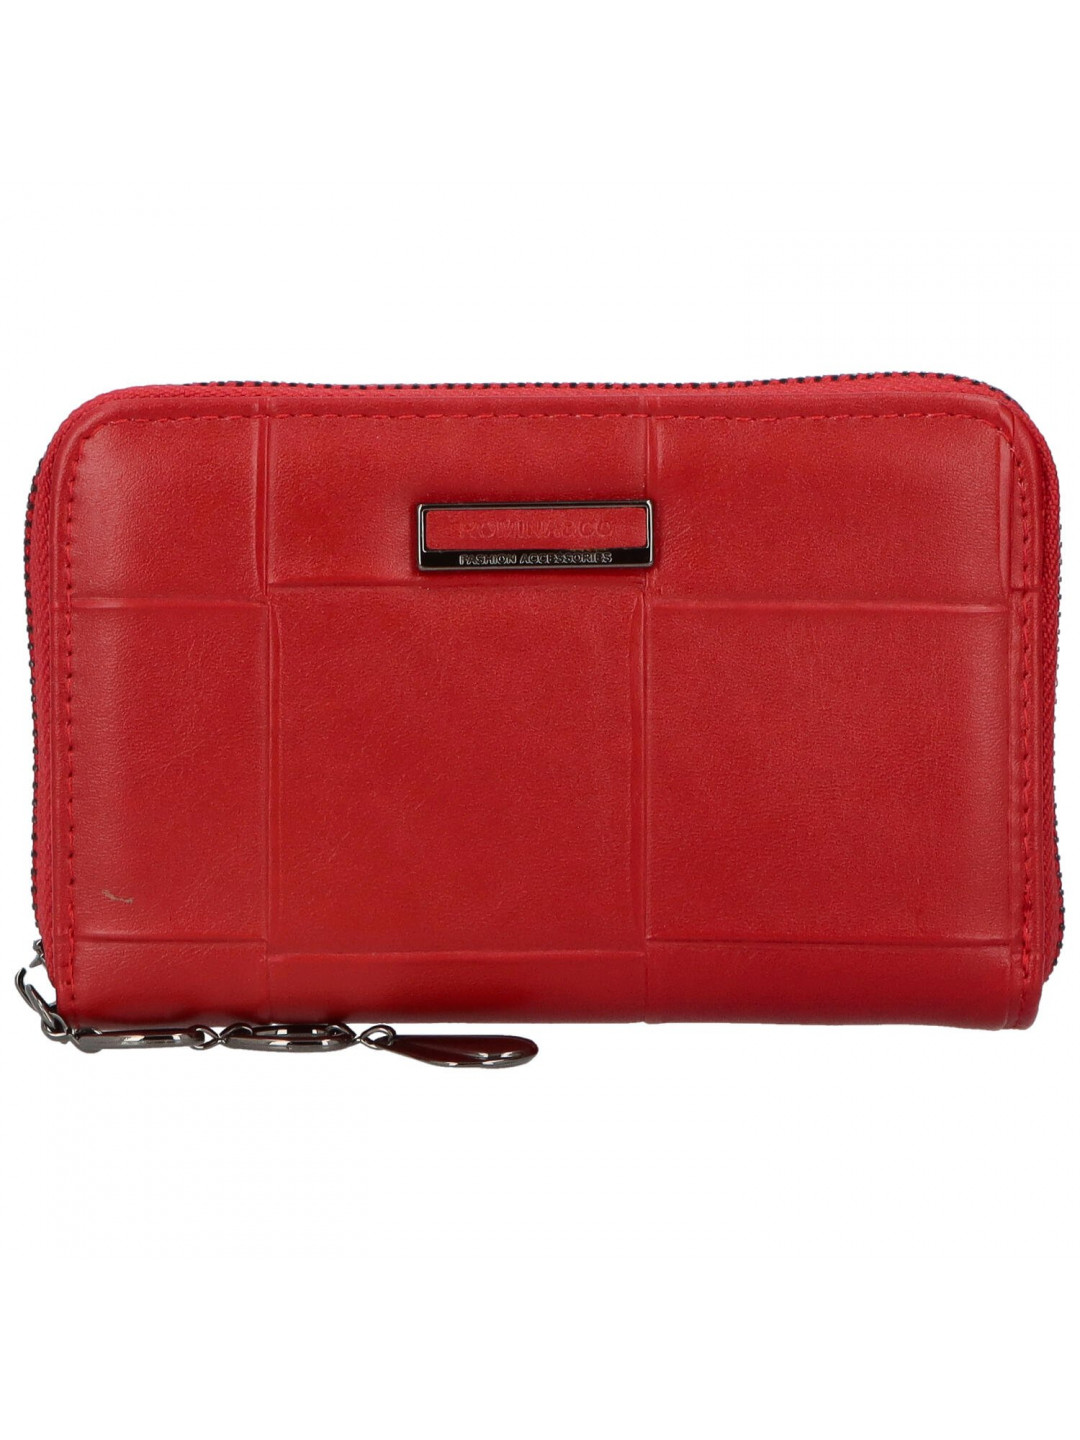 Dámská peněženka červená – Romina & Co Bags Ysuffa